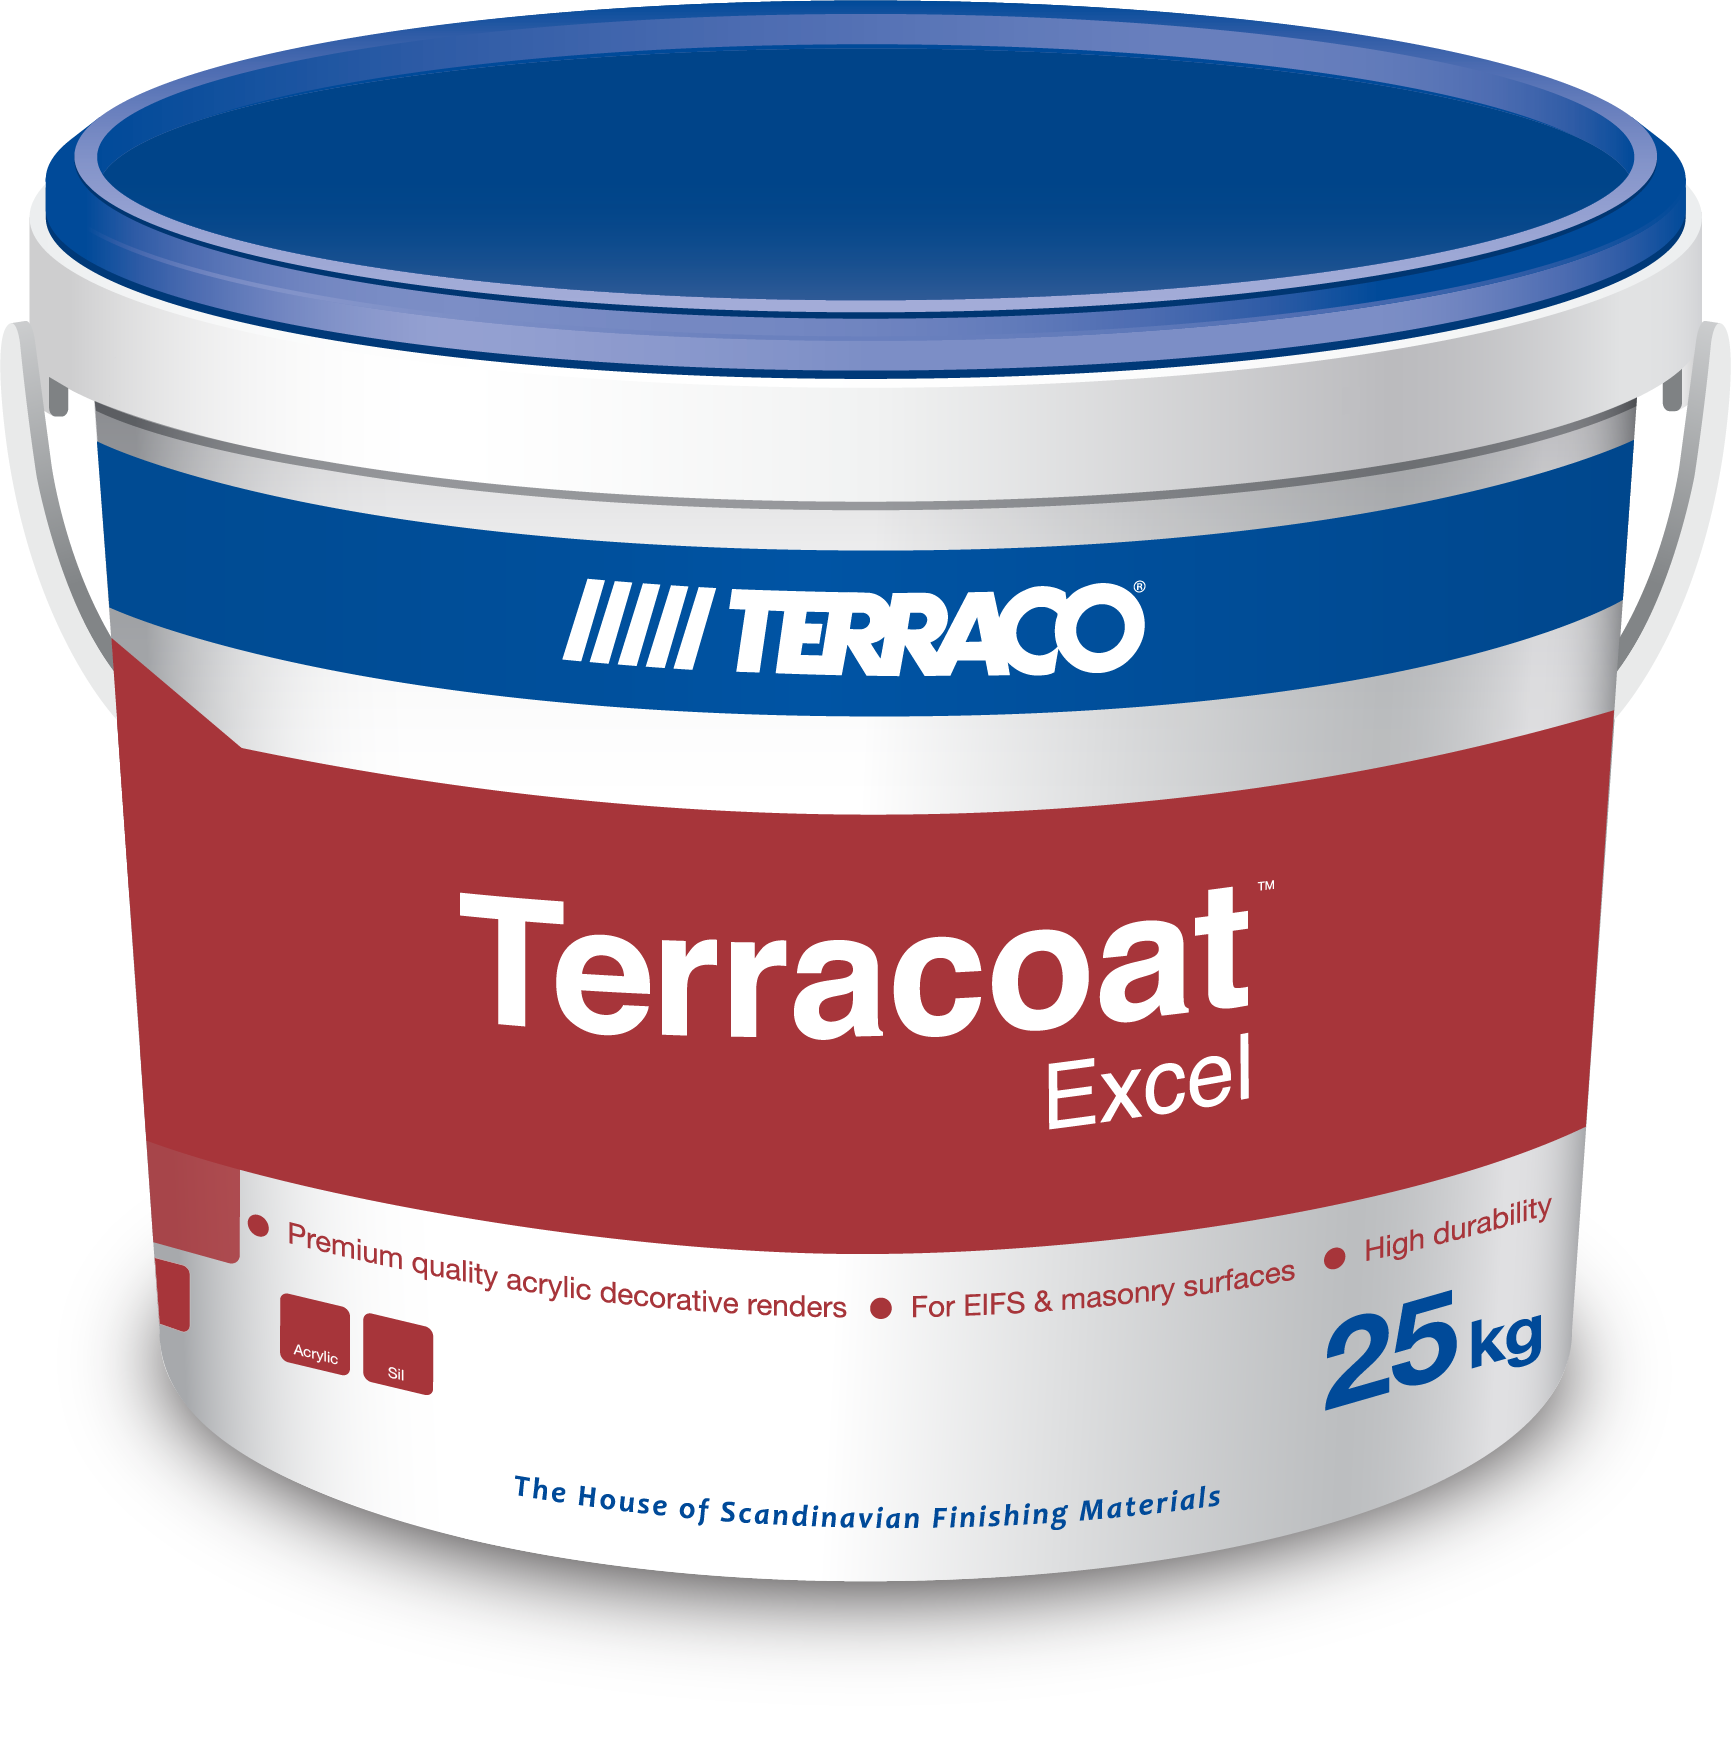 Terracoat Excel